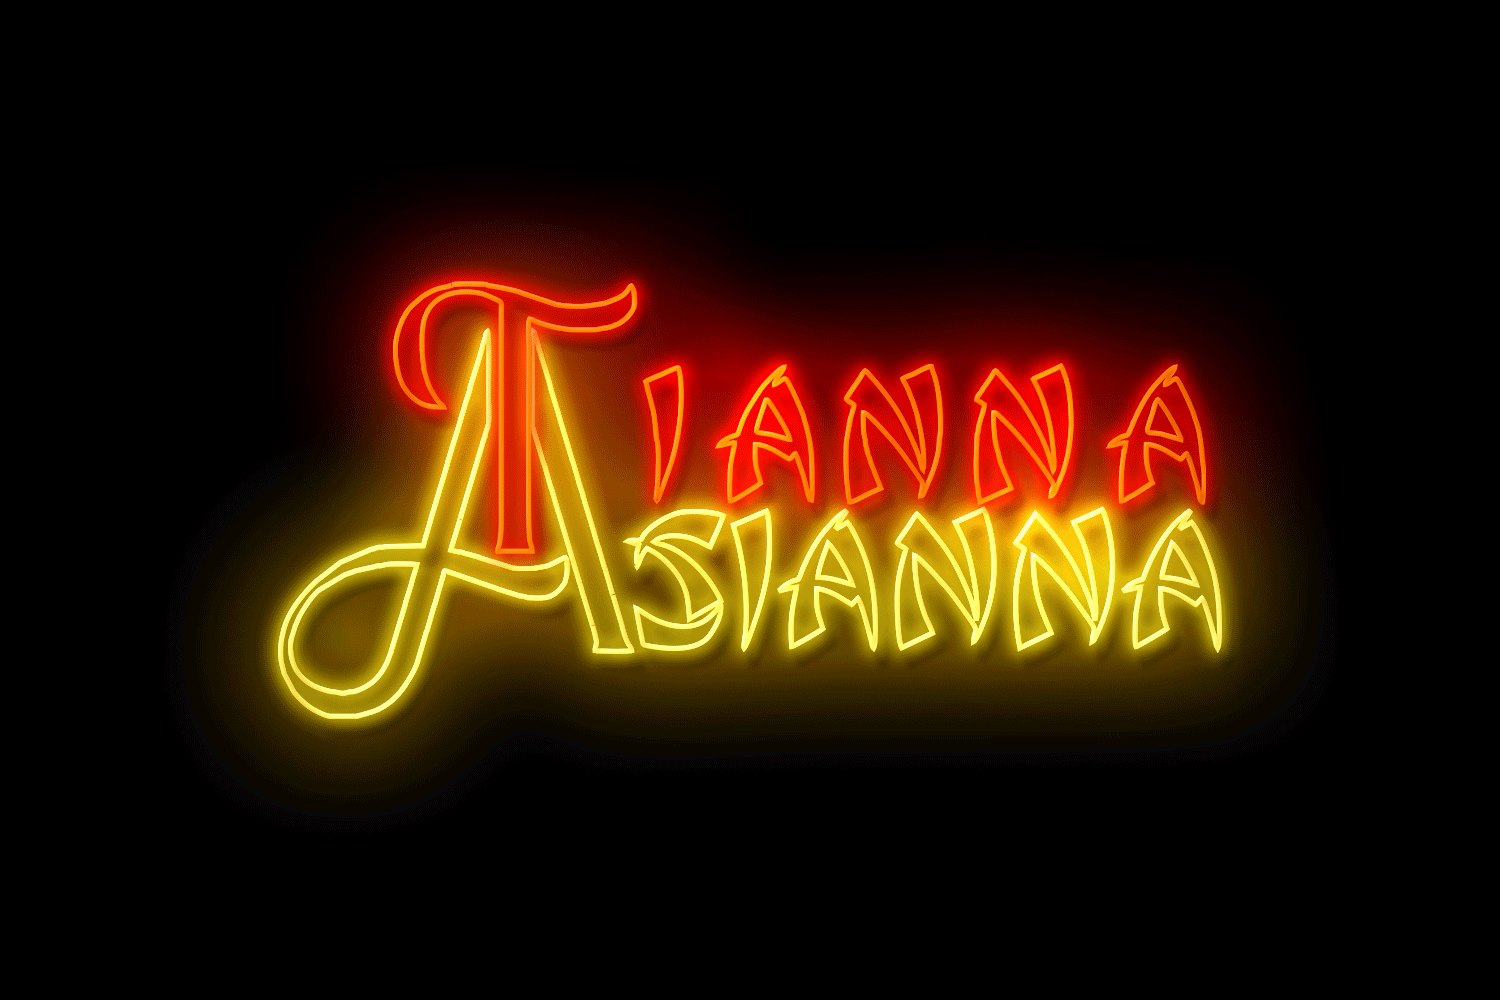 Tianna Asianna